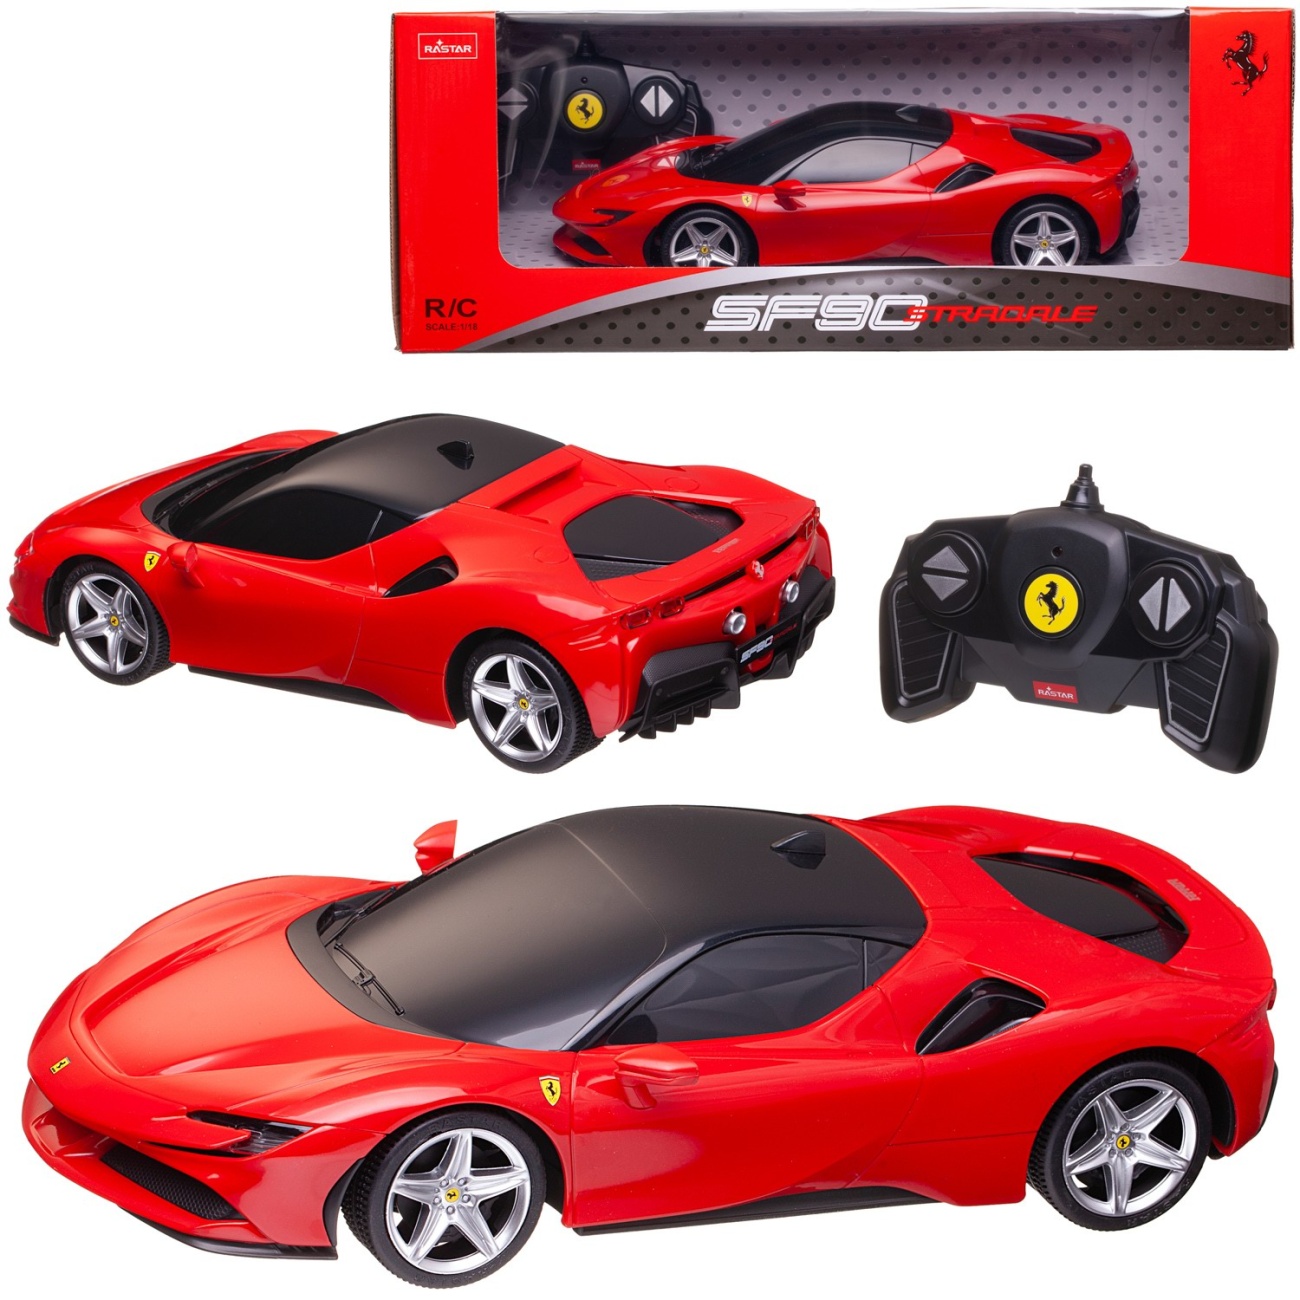 Машина р/у 1:18 Ferrari SF90 Stradale 2,4G, цвет красный, фары светятся, 25.9х12.7х7 RASTAR 97500R